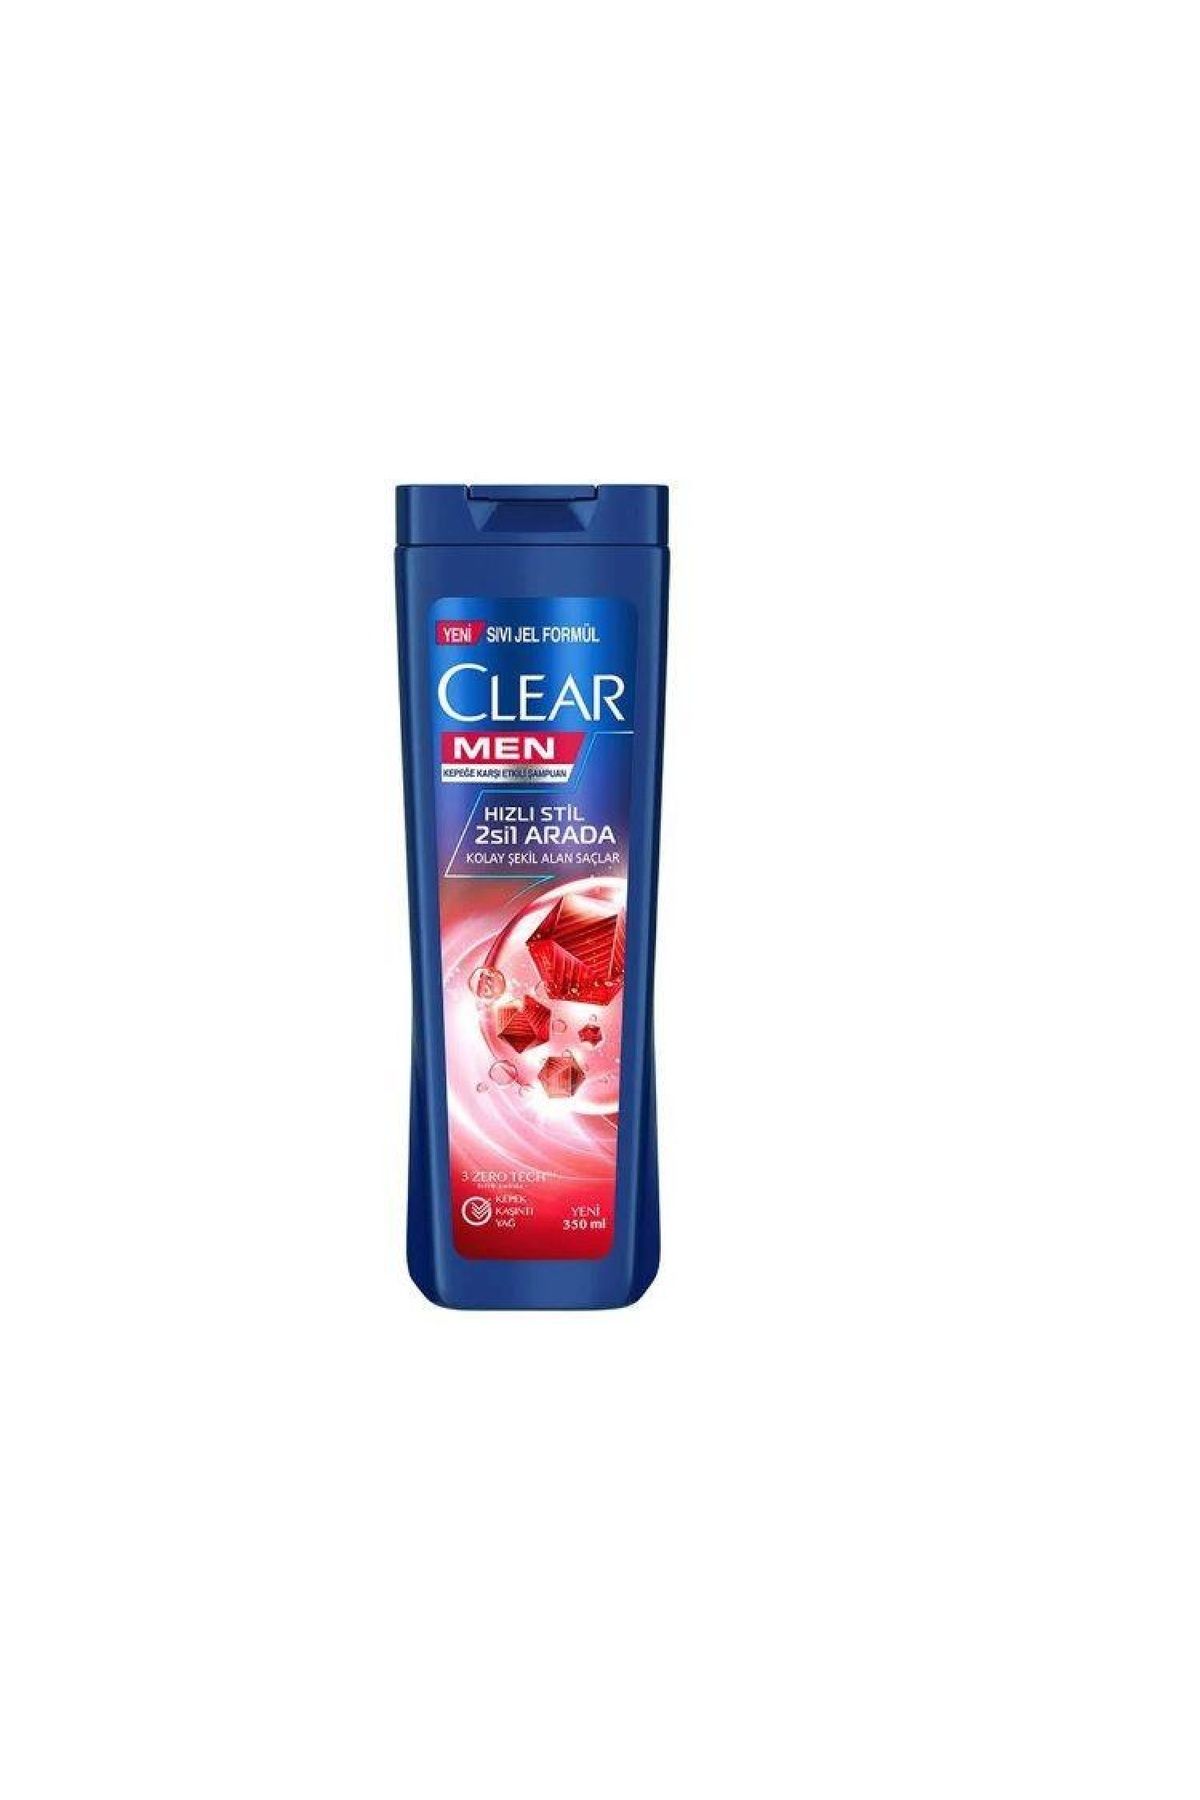 Clear Şampuan 350 Ml. Men 2in1 Hızlı Stil (2'Lİ)